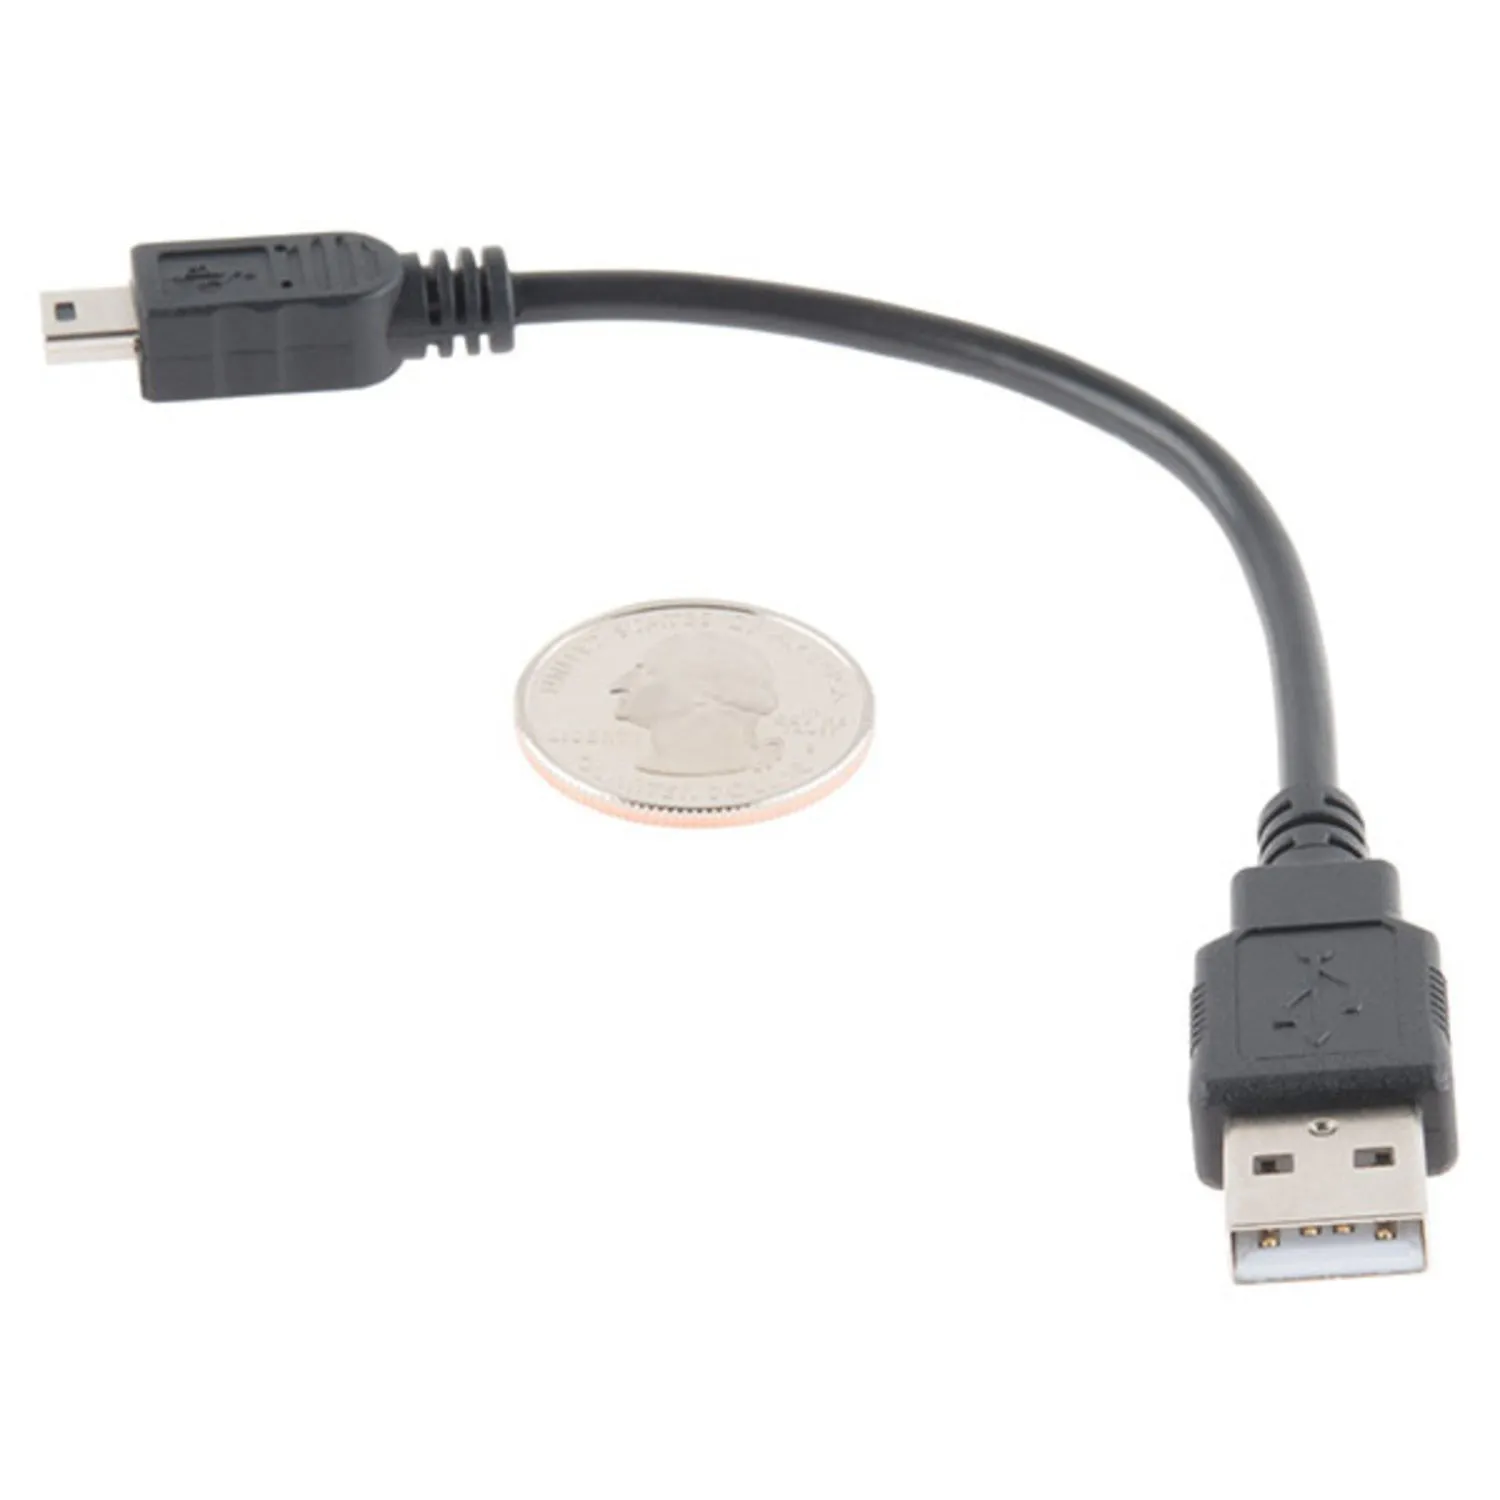 Photo of USB Mini-B Cable - 6